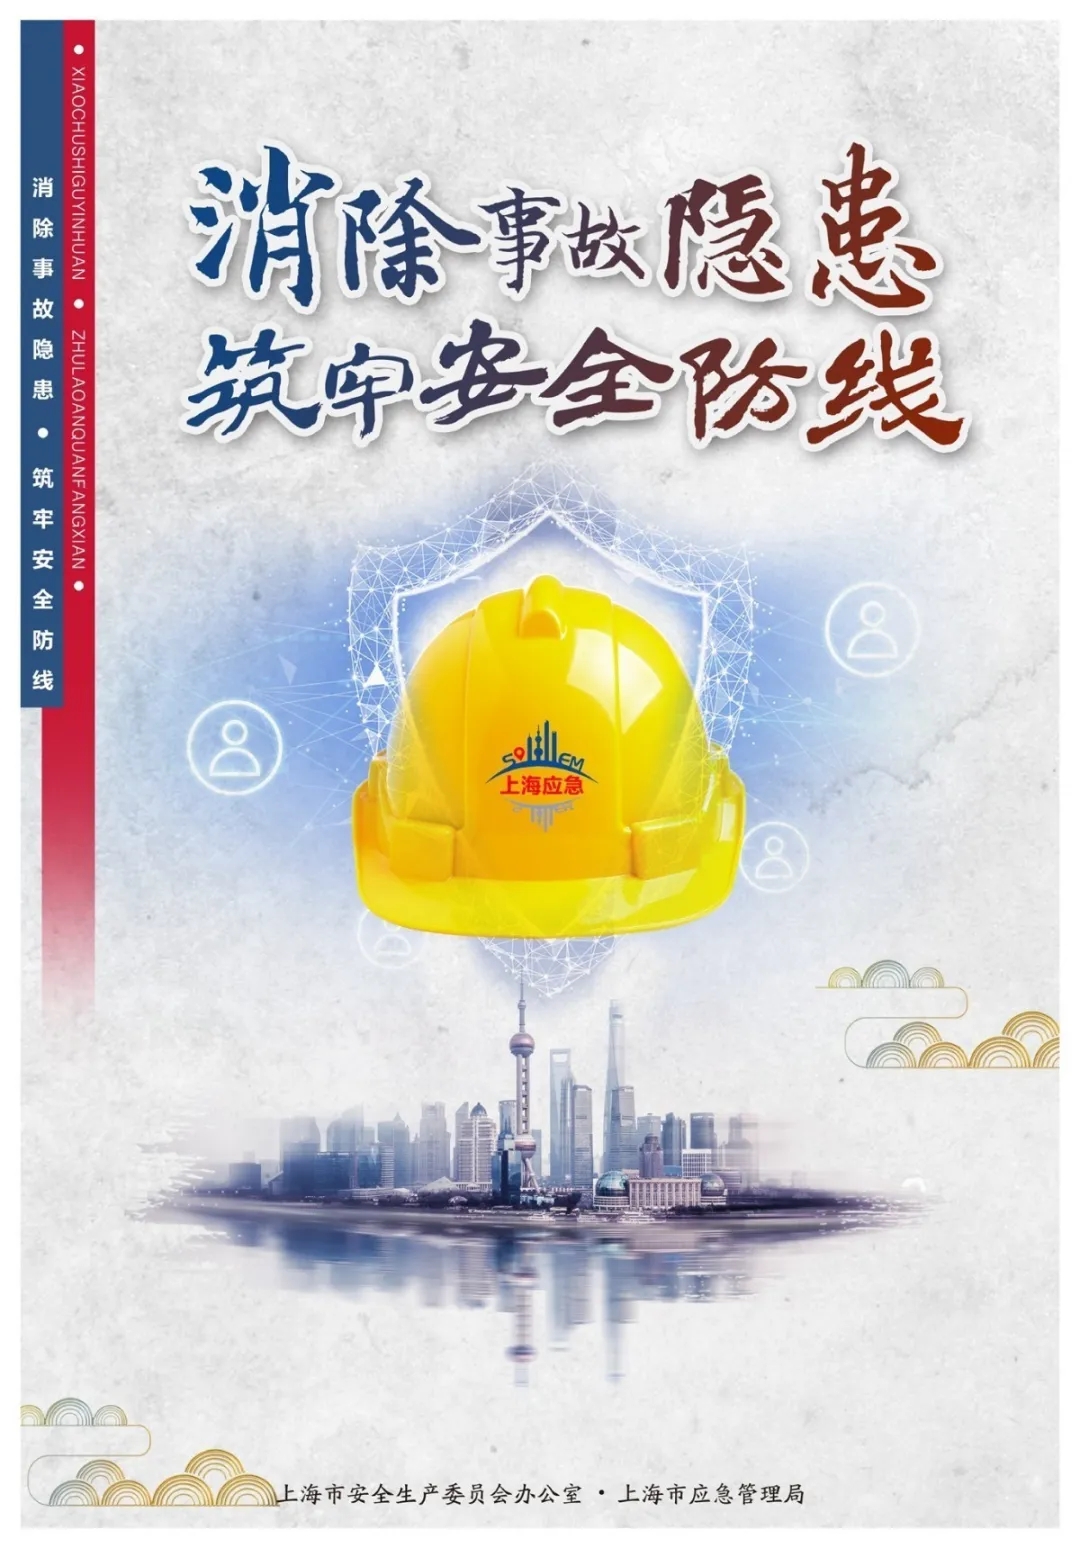 2020年上海安全生产月主题宣传海报